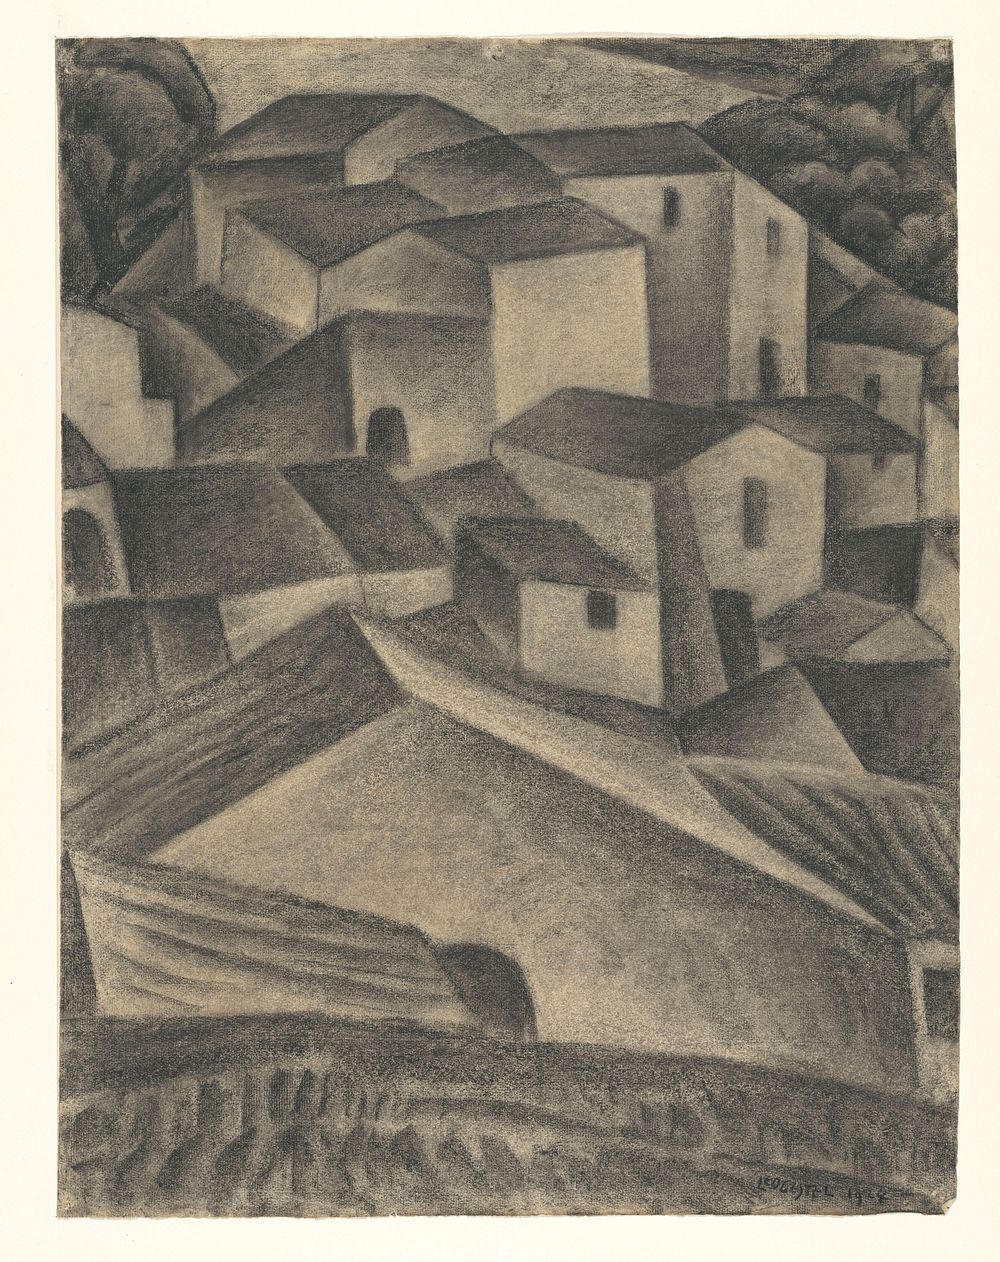 Huizen in een Italiaans dorp (1924) by Leo Gestel